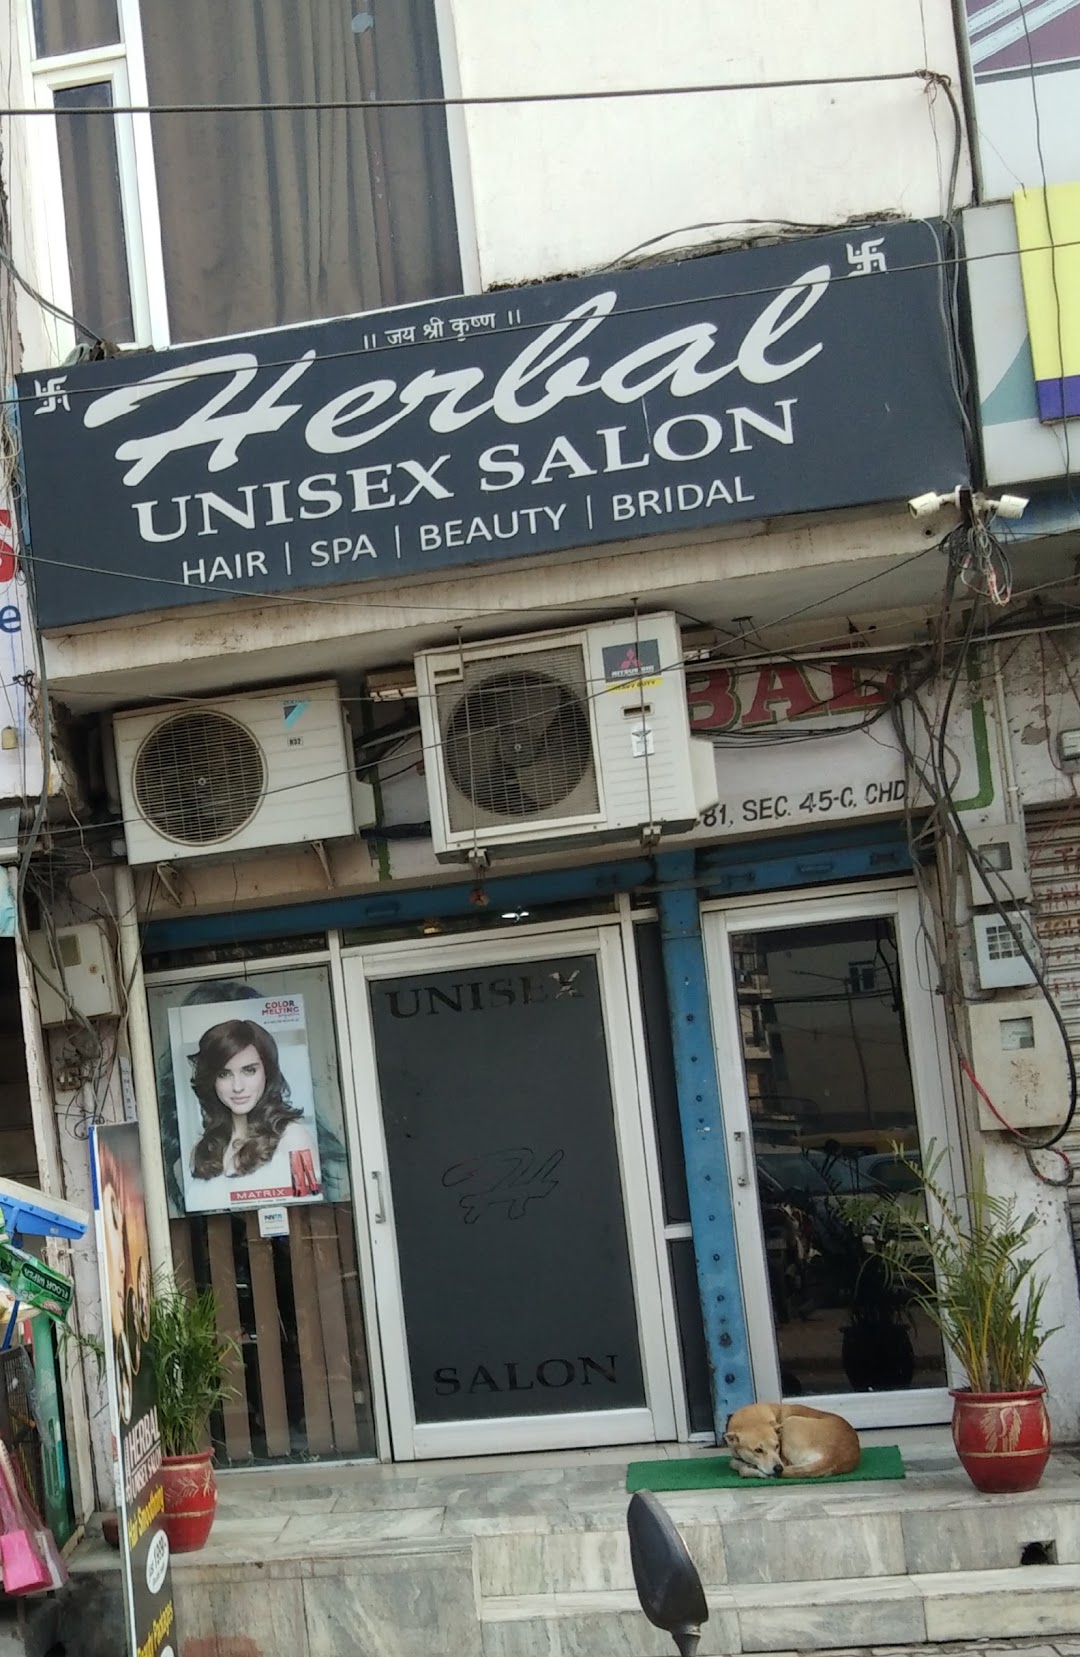 Herbal Unisex Salon